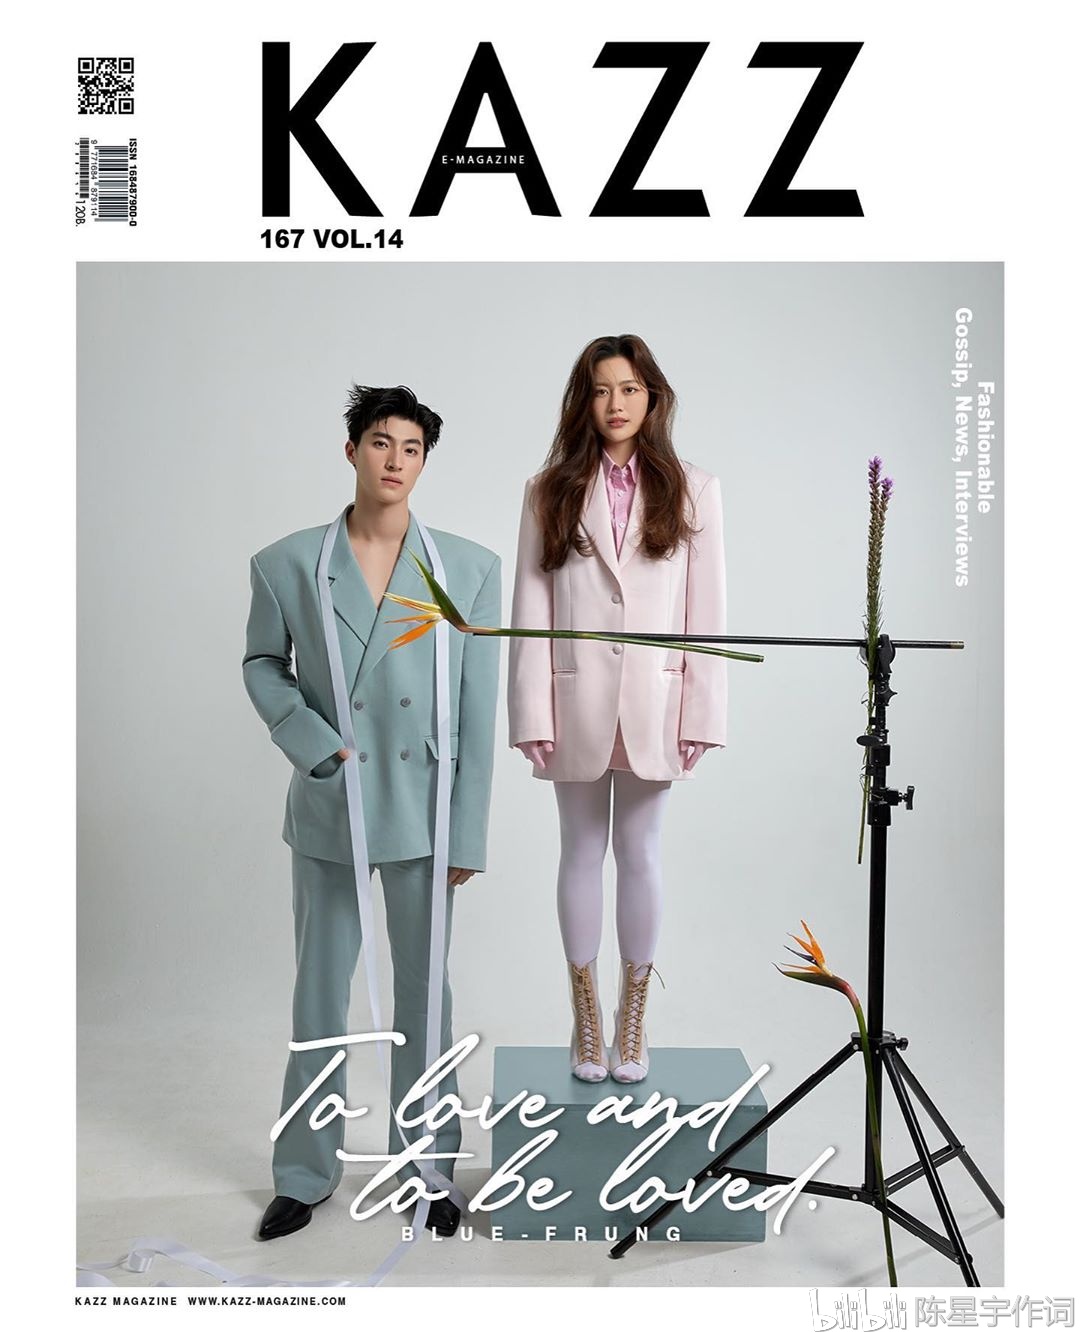 泰国杂志《kazz》最新刊写真人物:泰剧明星blue pongtiwat ,frung